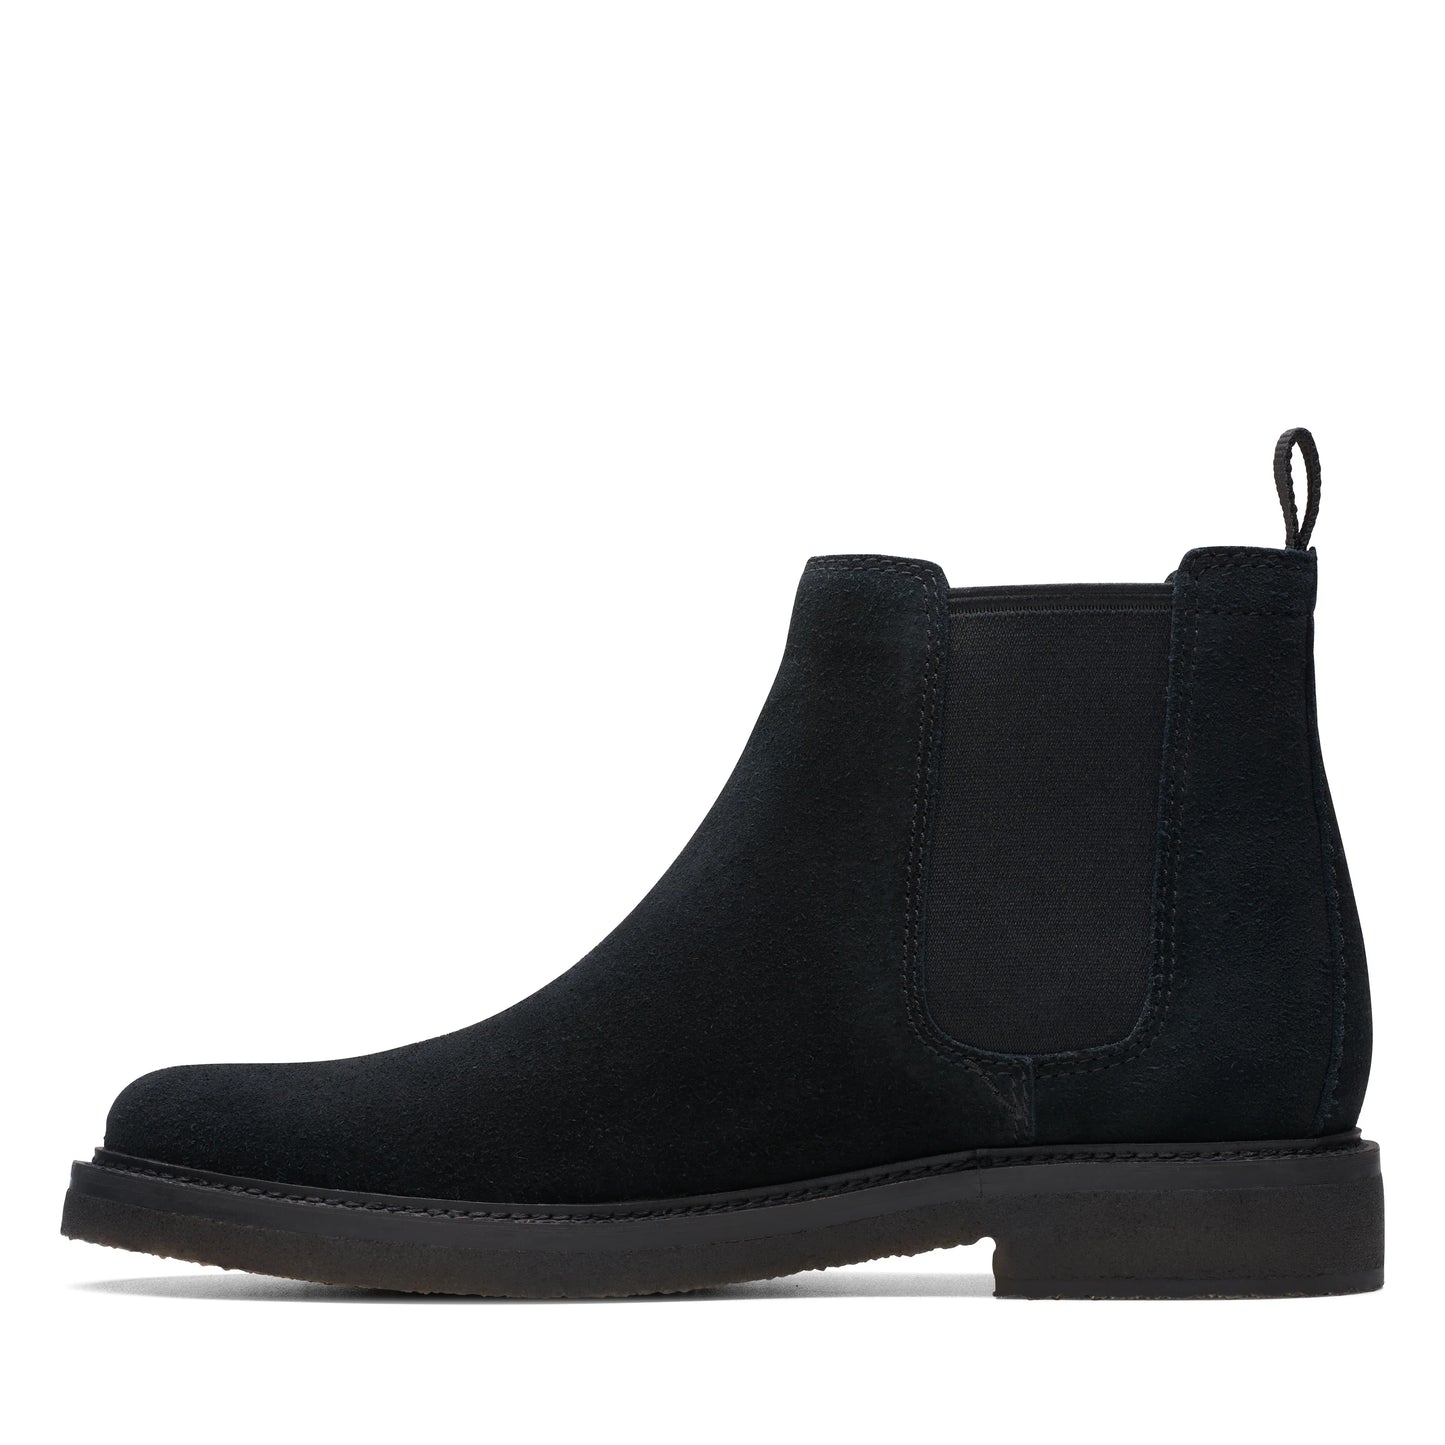 CLARKS | 切尔西男士靴子 | CLARKDALE EASY BLACK SUEDE | 黑色的